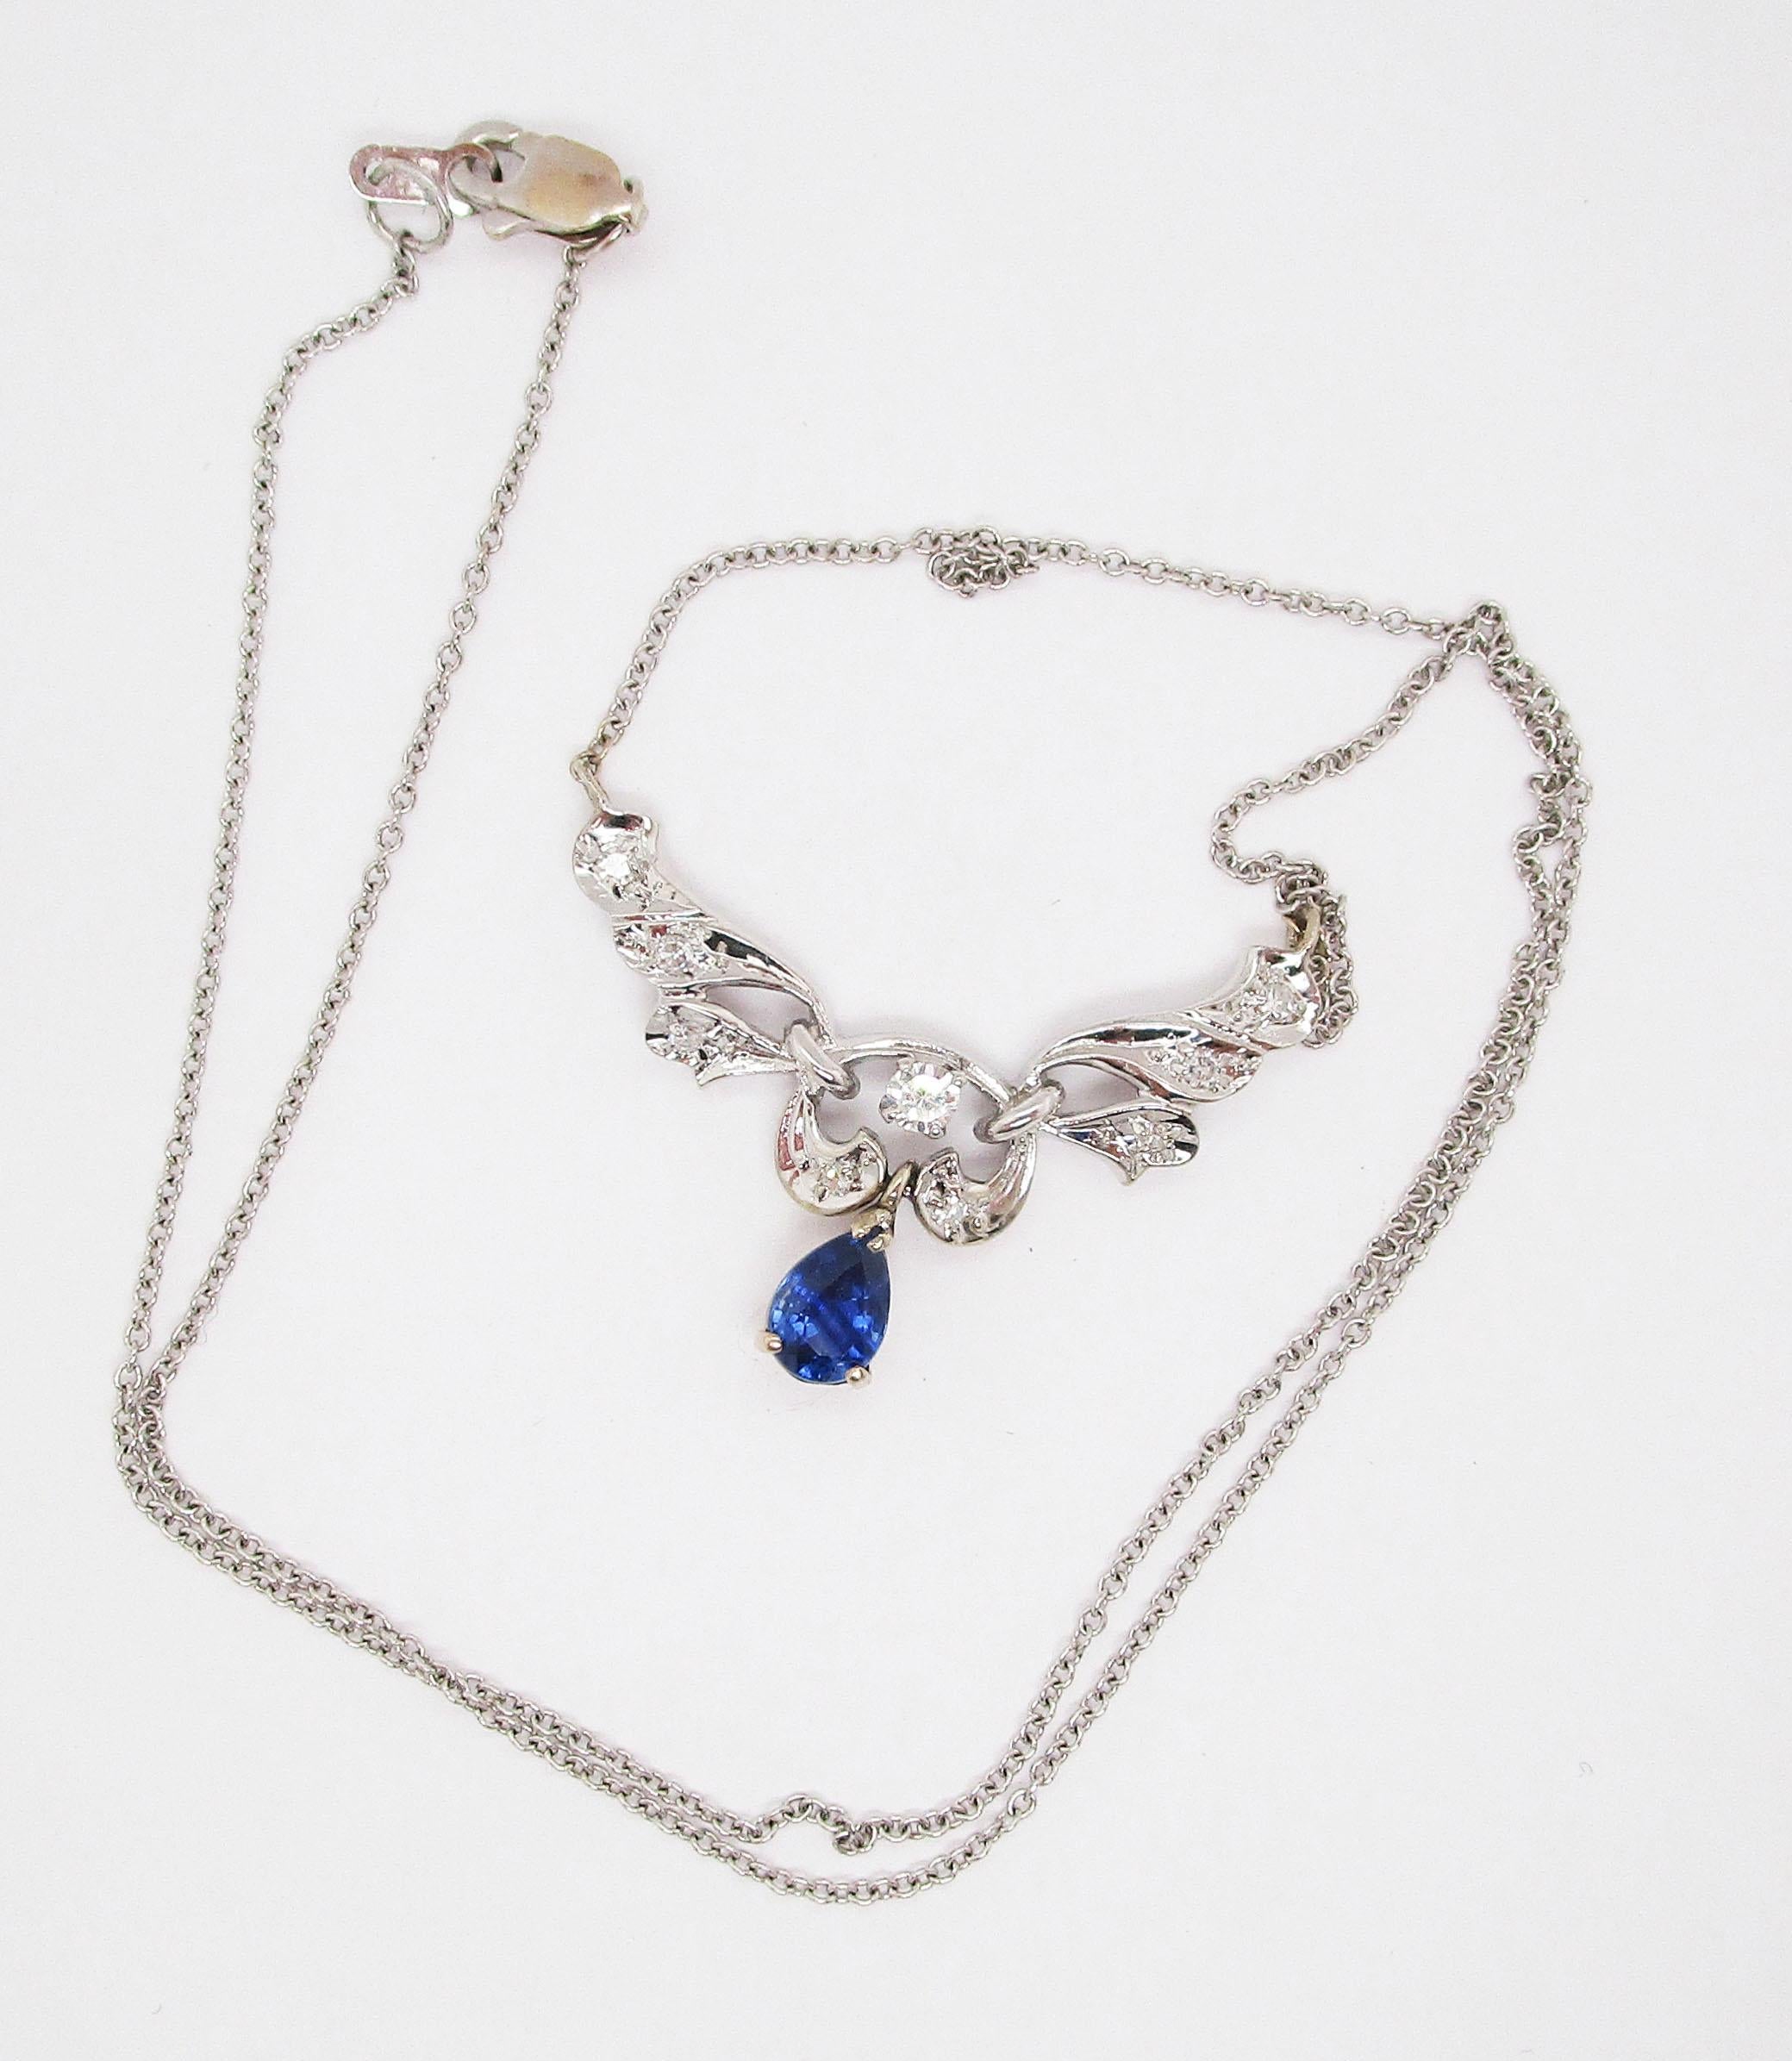 Ce collier présente un design définitif en or blanc 14k et est rehaussé de diamants et d'un superbe saphir bleu en forme de poire. La disposition longue du collier donne un aspect spectaculaire au cou. Le blanc éclatant des diamants sertis sur l'or